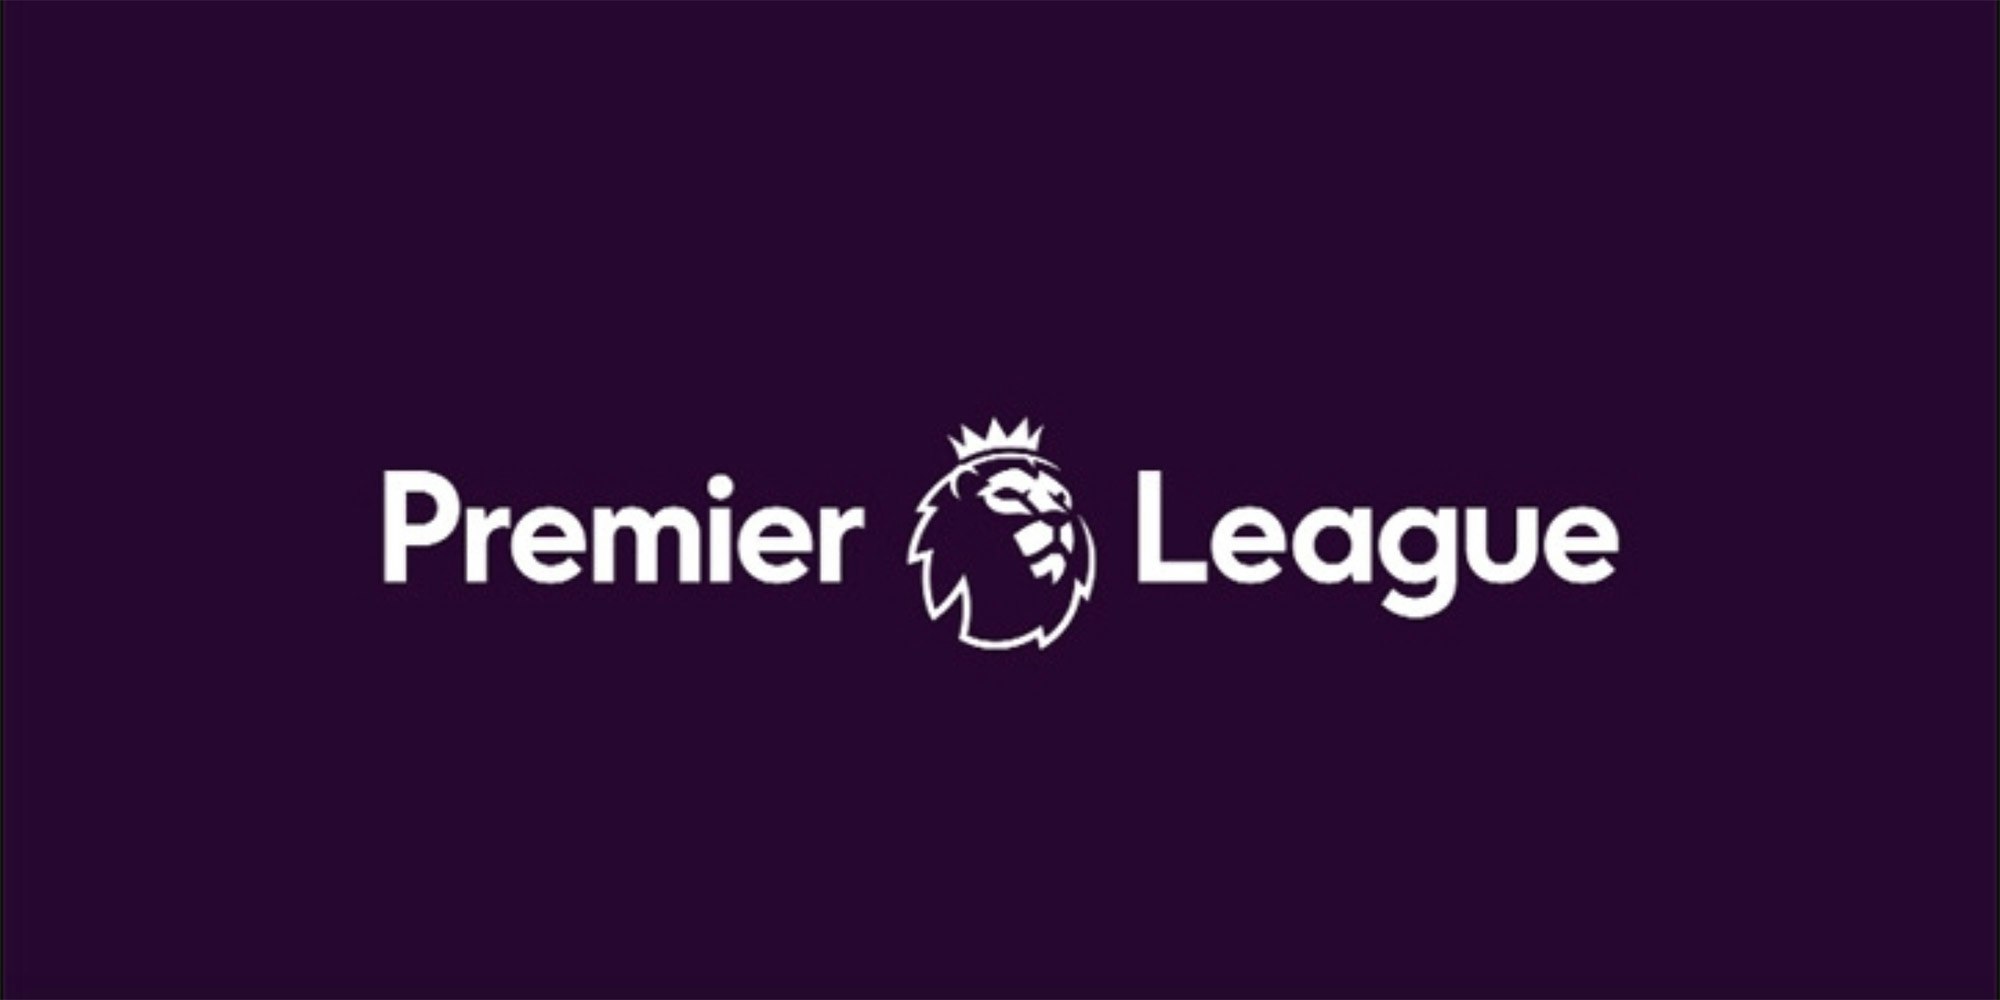 Stream Premier League Watch the 20-21 Premier League Season Live